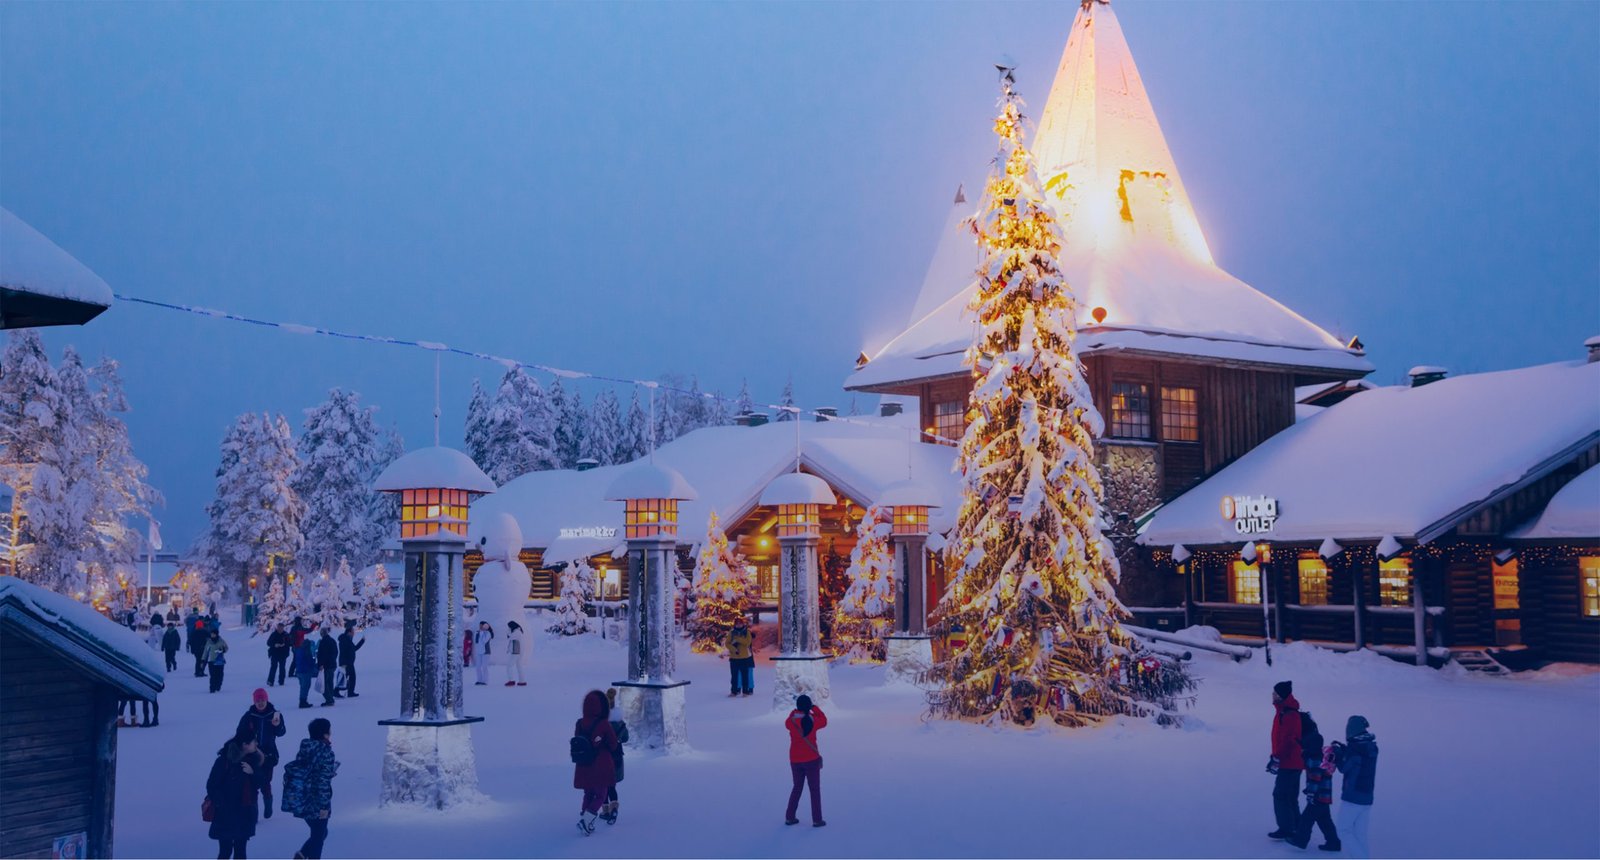 Santa Claus Village in Finland in December